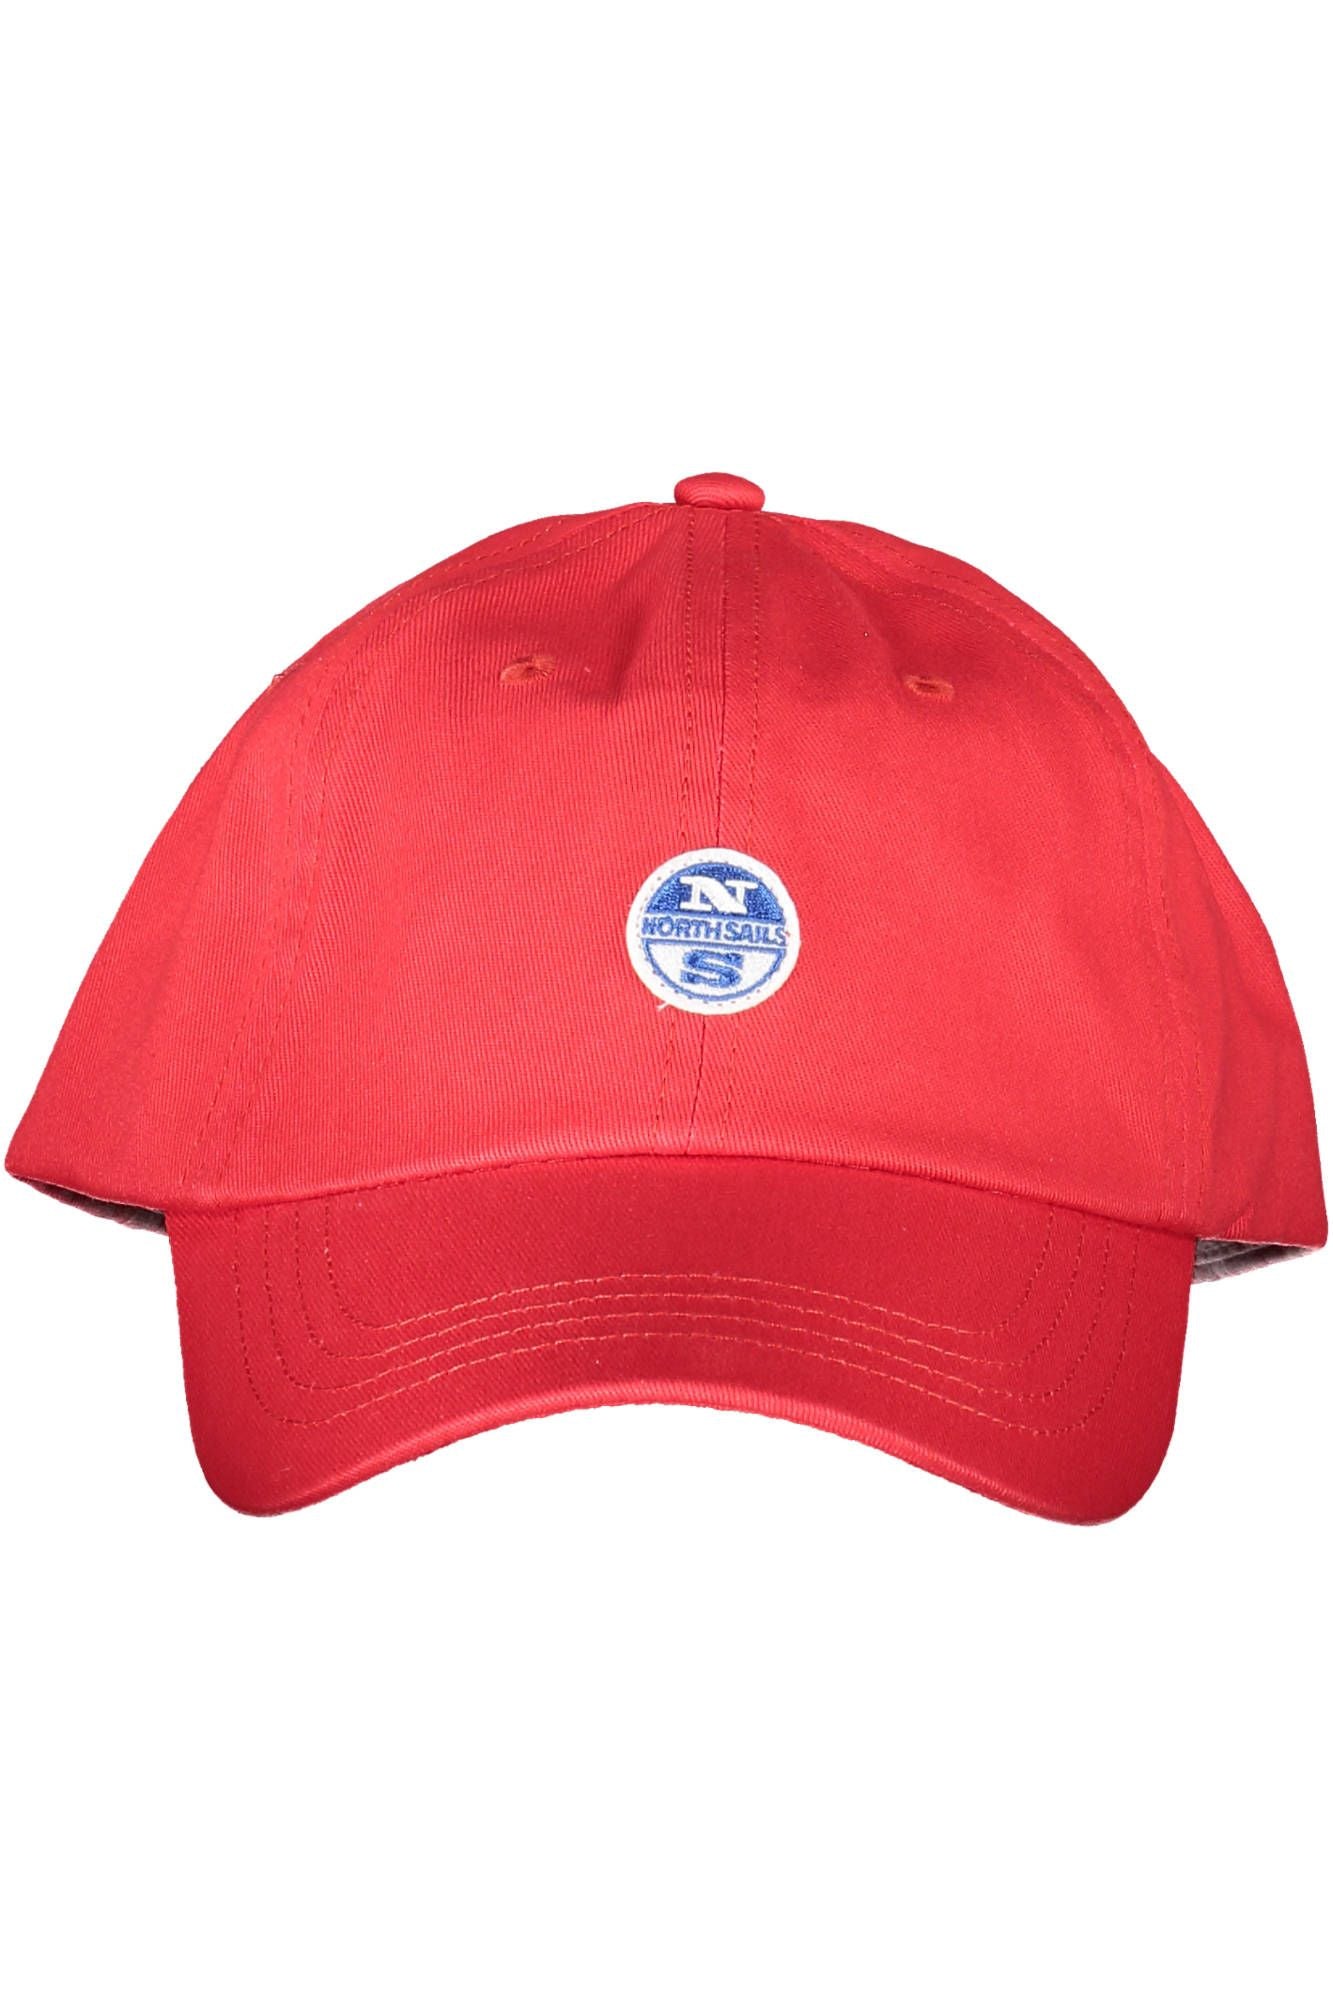 North Sails Elegant Red Cotton Cap with Logo Visor